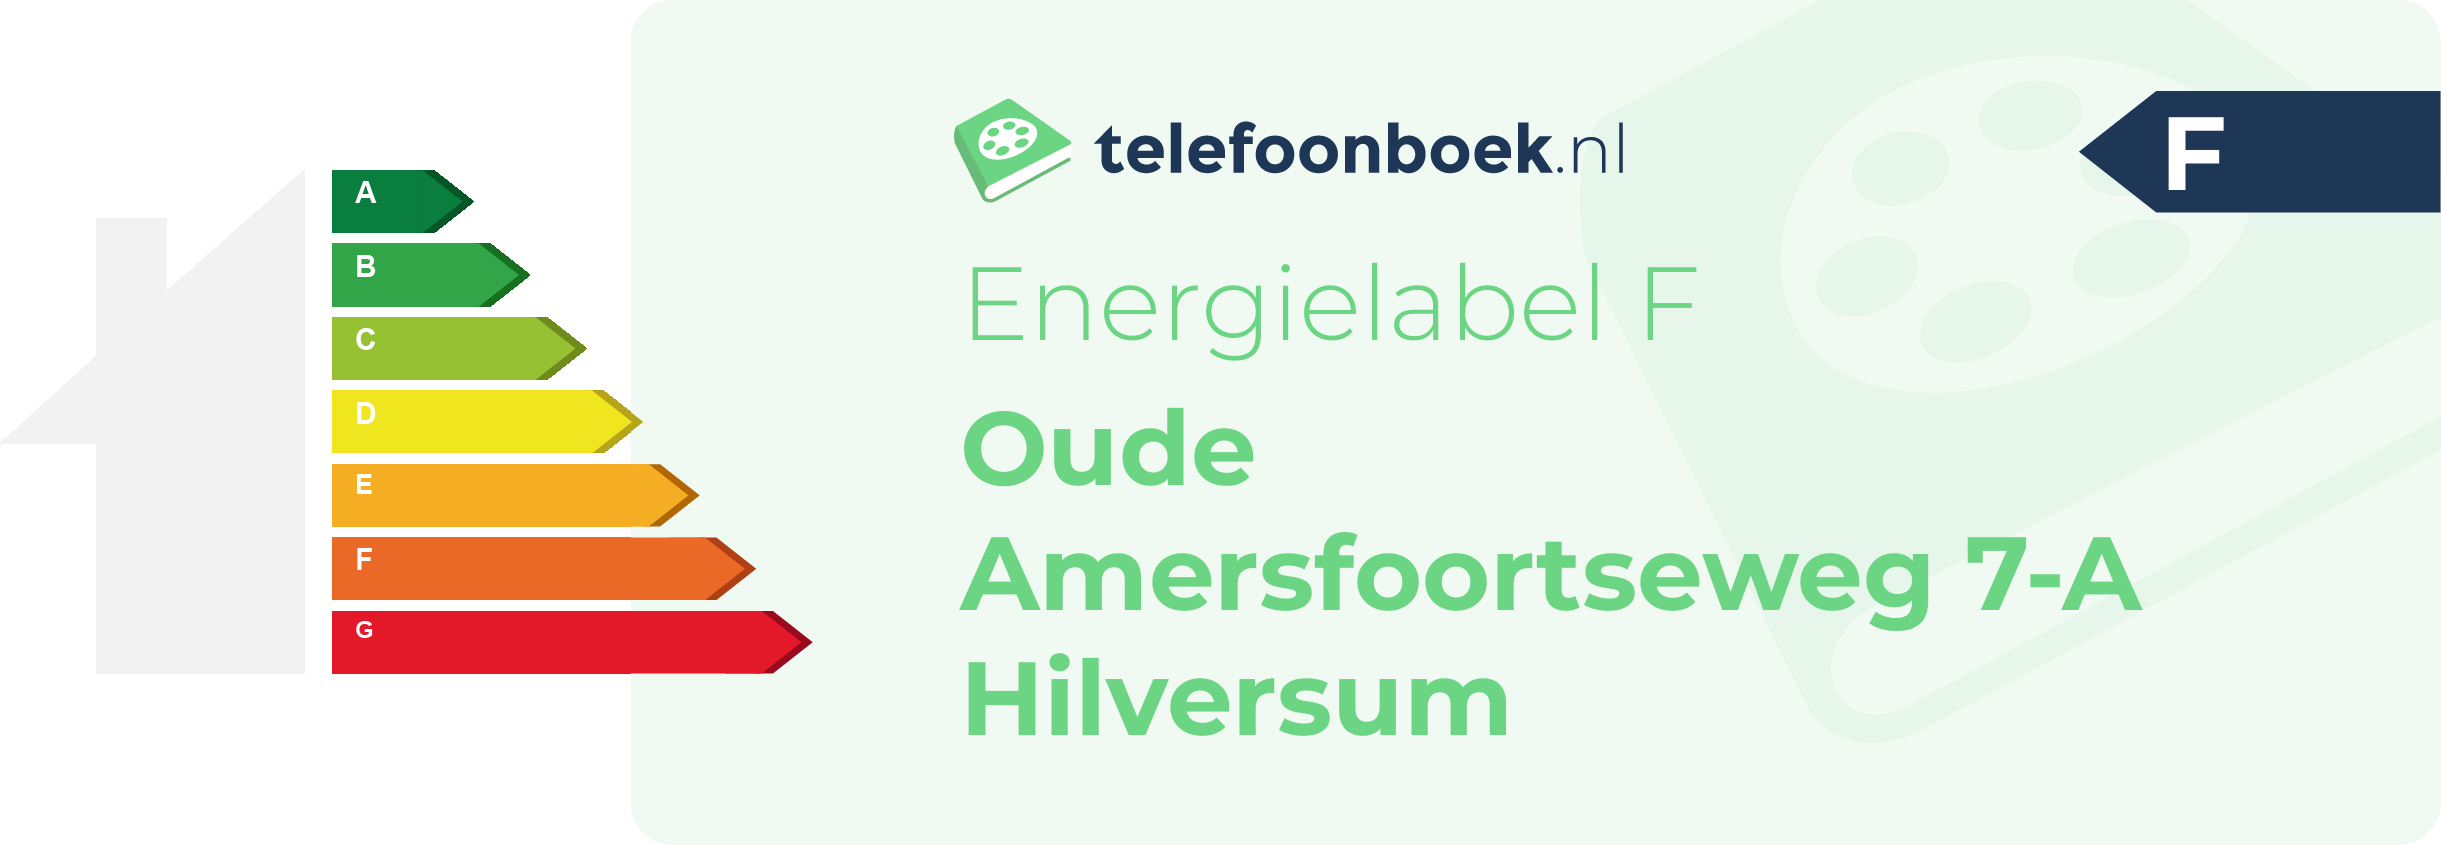 Energielabel Oude Amersfoortseweg 7-A Hilversum